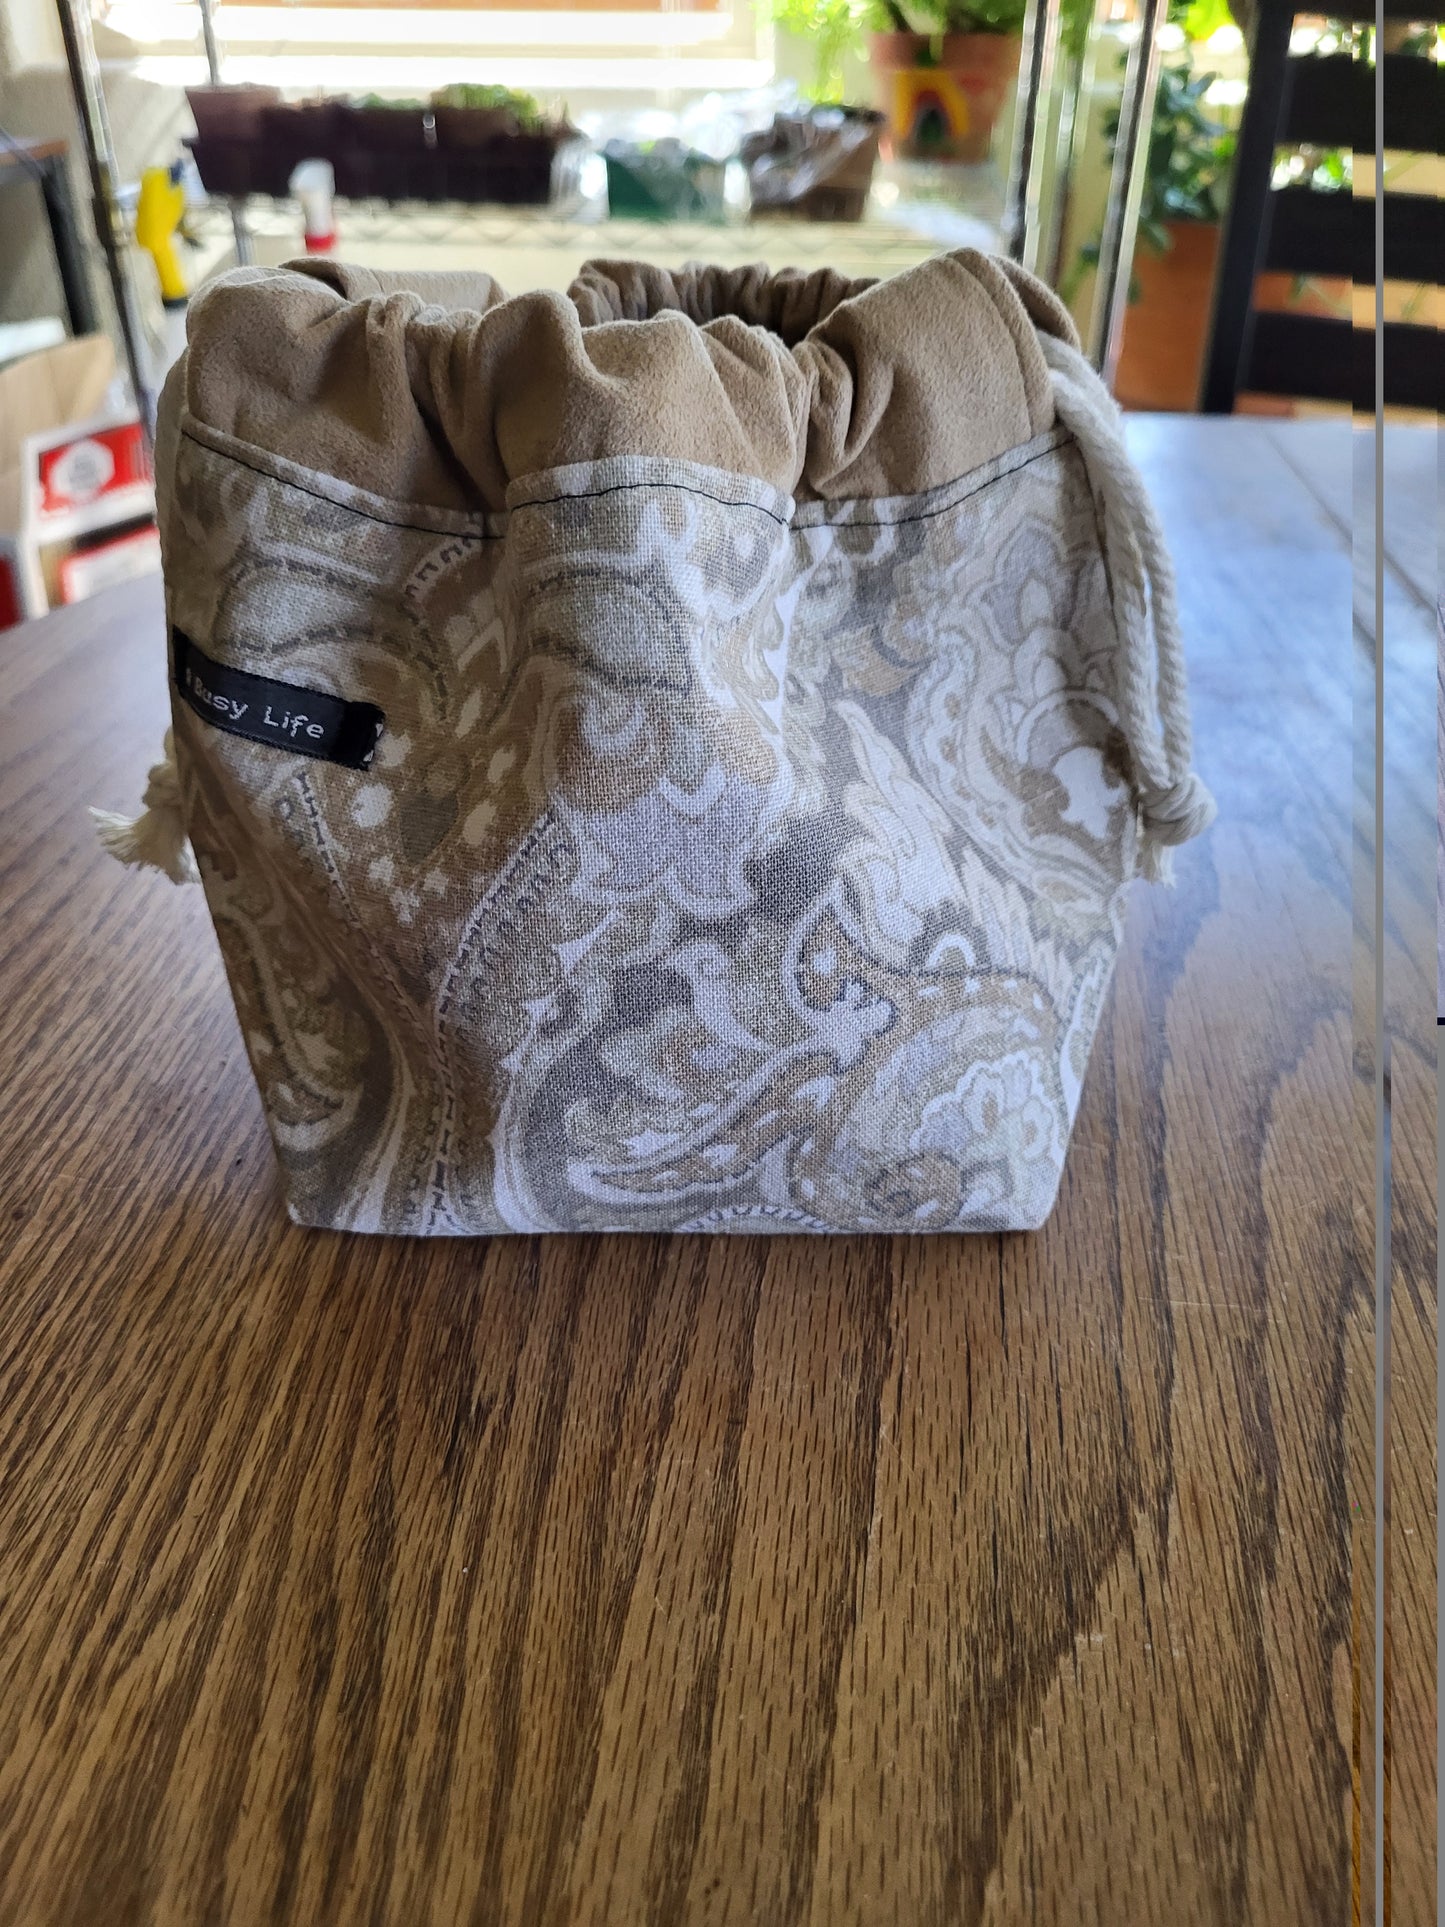 Paisley drawstring Sock Sack, Drawstring bag, small project bag, small storage bag